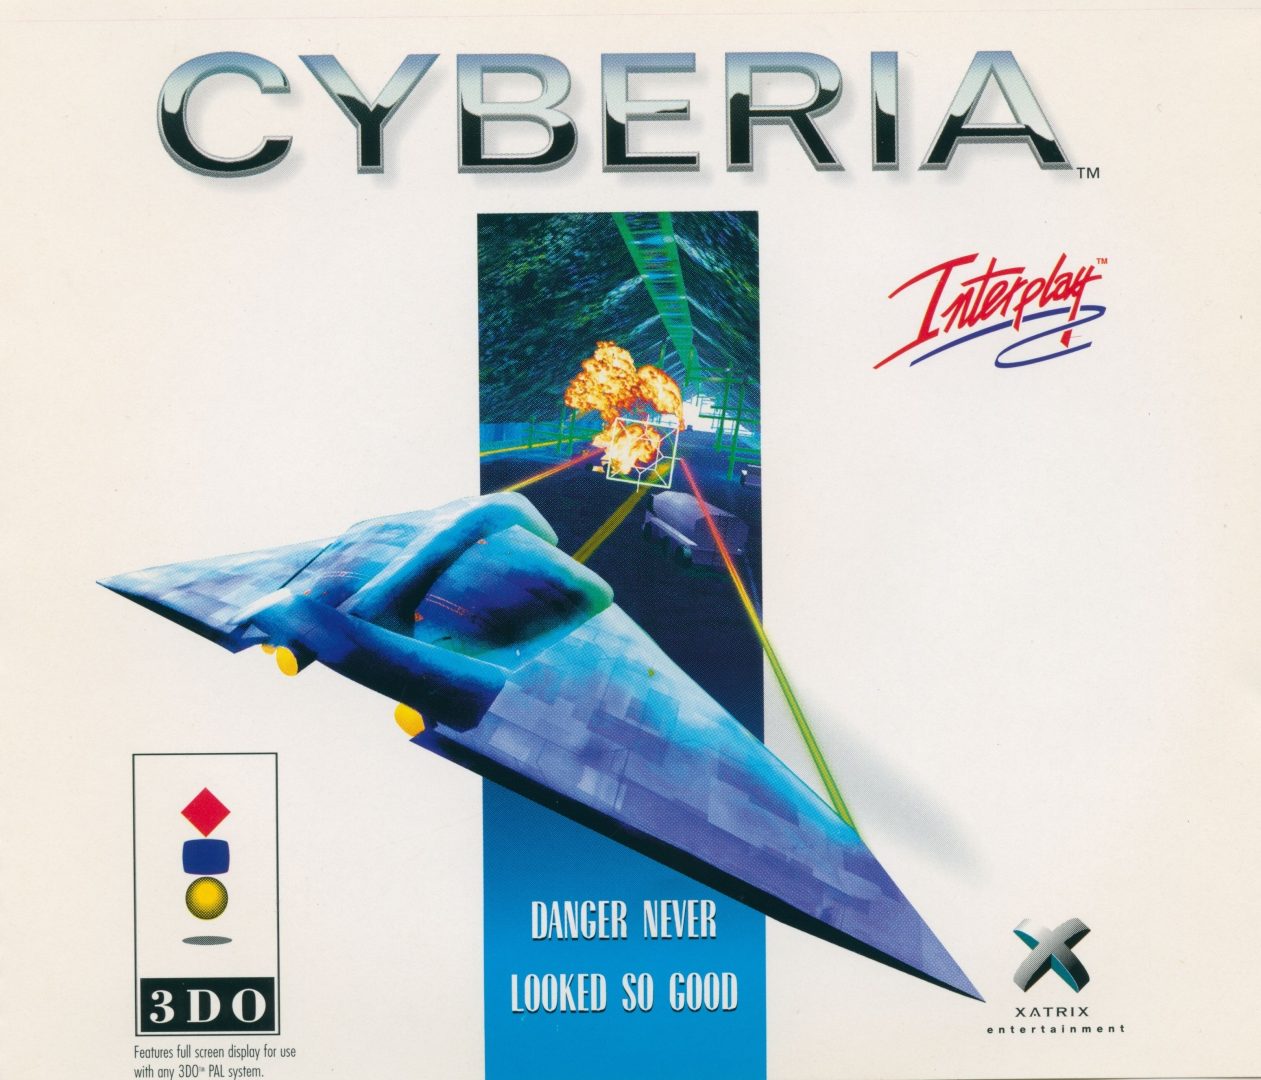 The coverart image of Cyberia